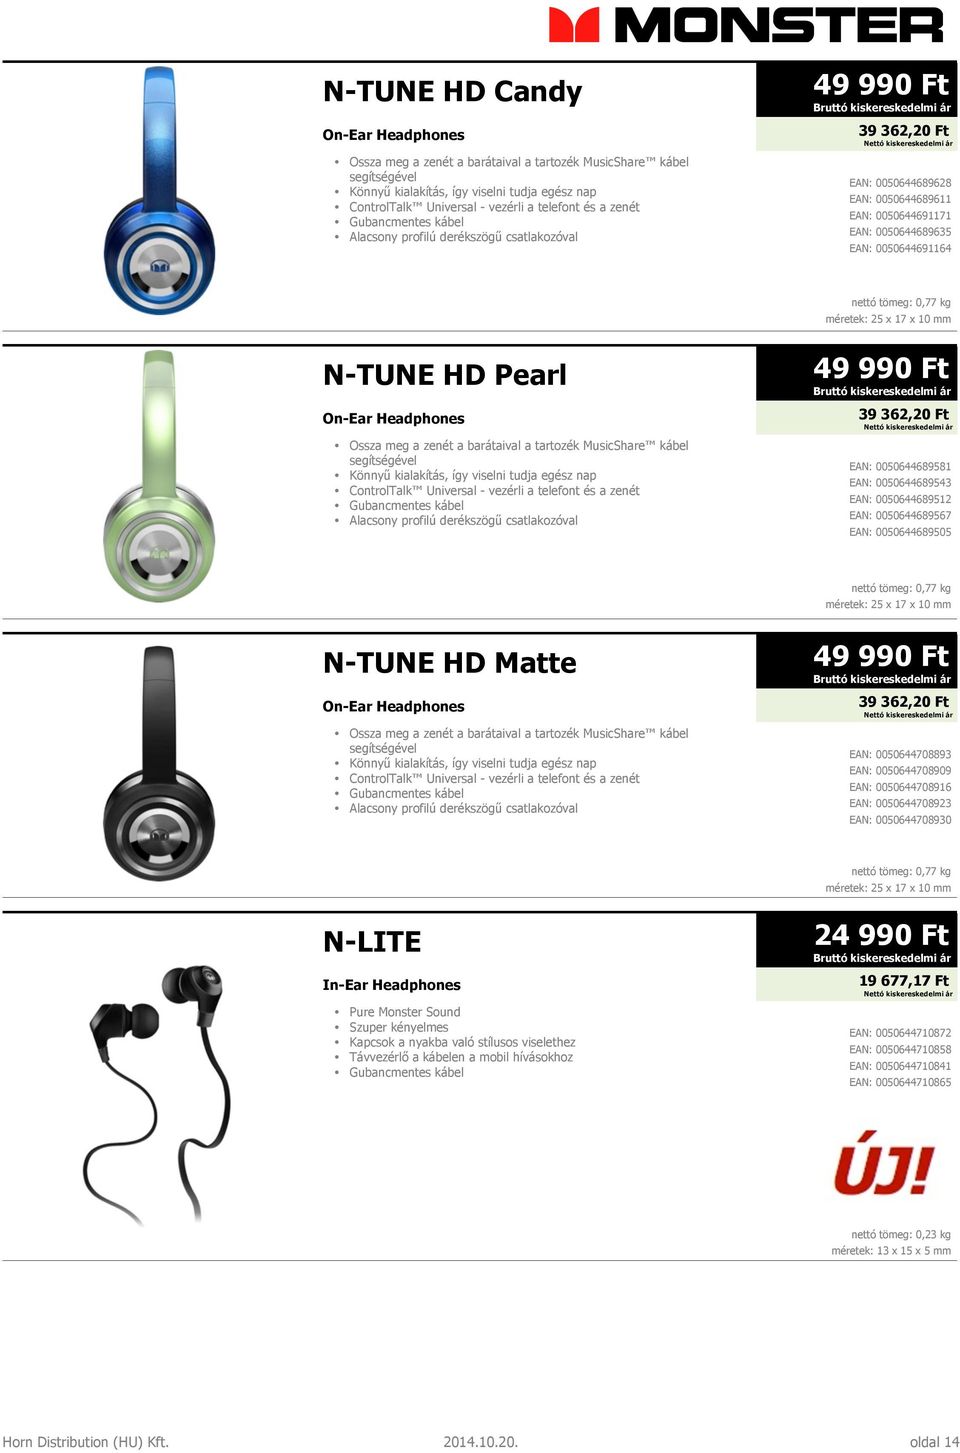 0,77 kg méretek: 25 x 17 x 10 mm N-TUNE HD Pearl On-Ear Headphones Ossza meg a zenét a barátaival a tartozék MusicShare kábel segítségével Könnyű kialakítás, így viselni tudja egész nap ControlTalk